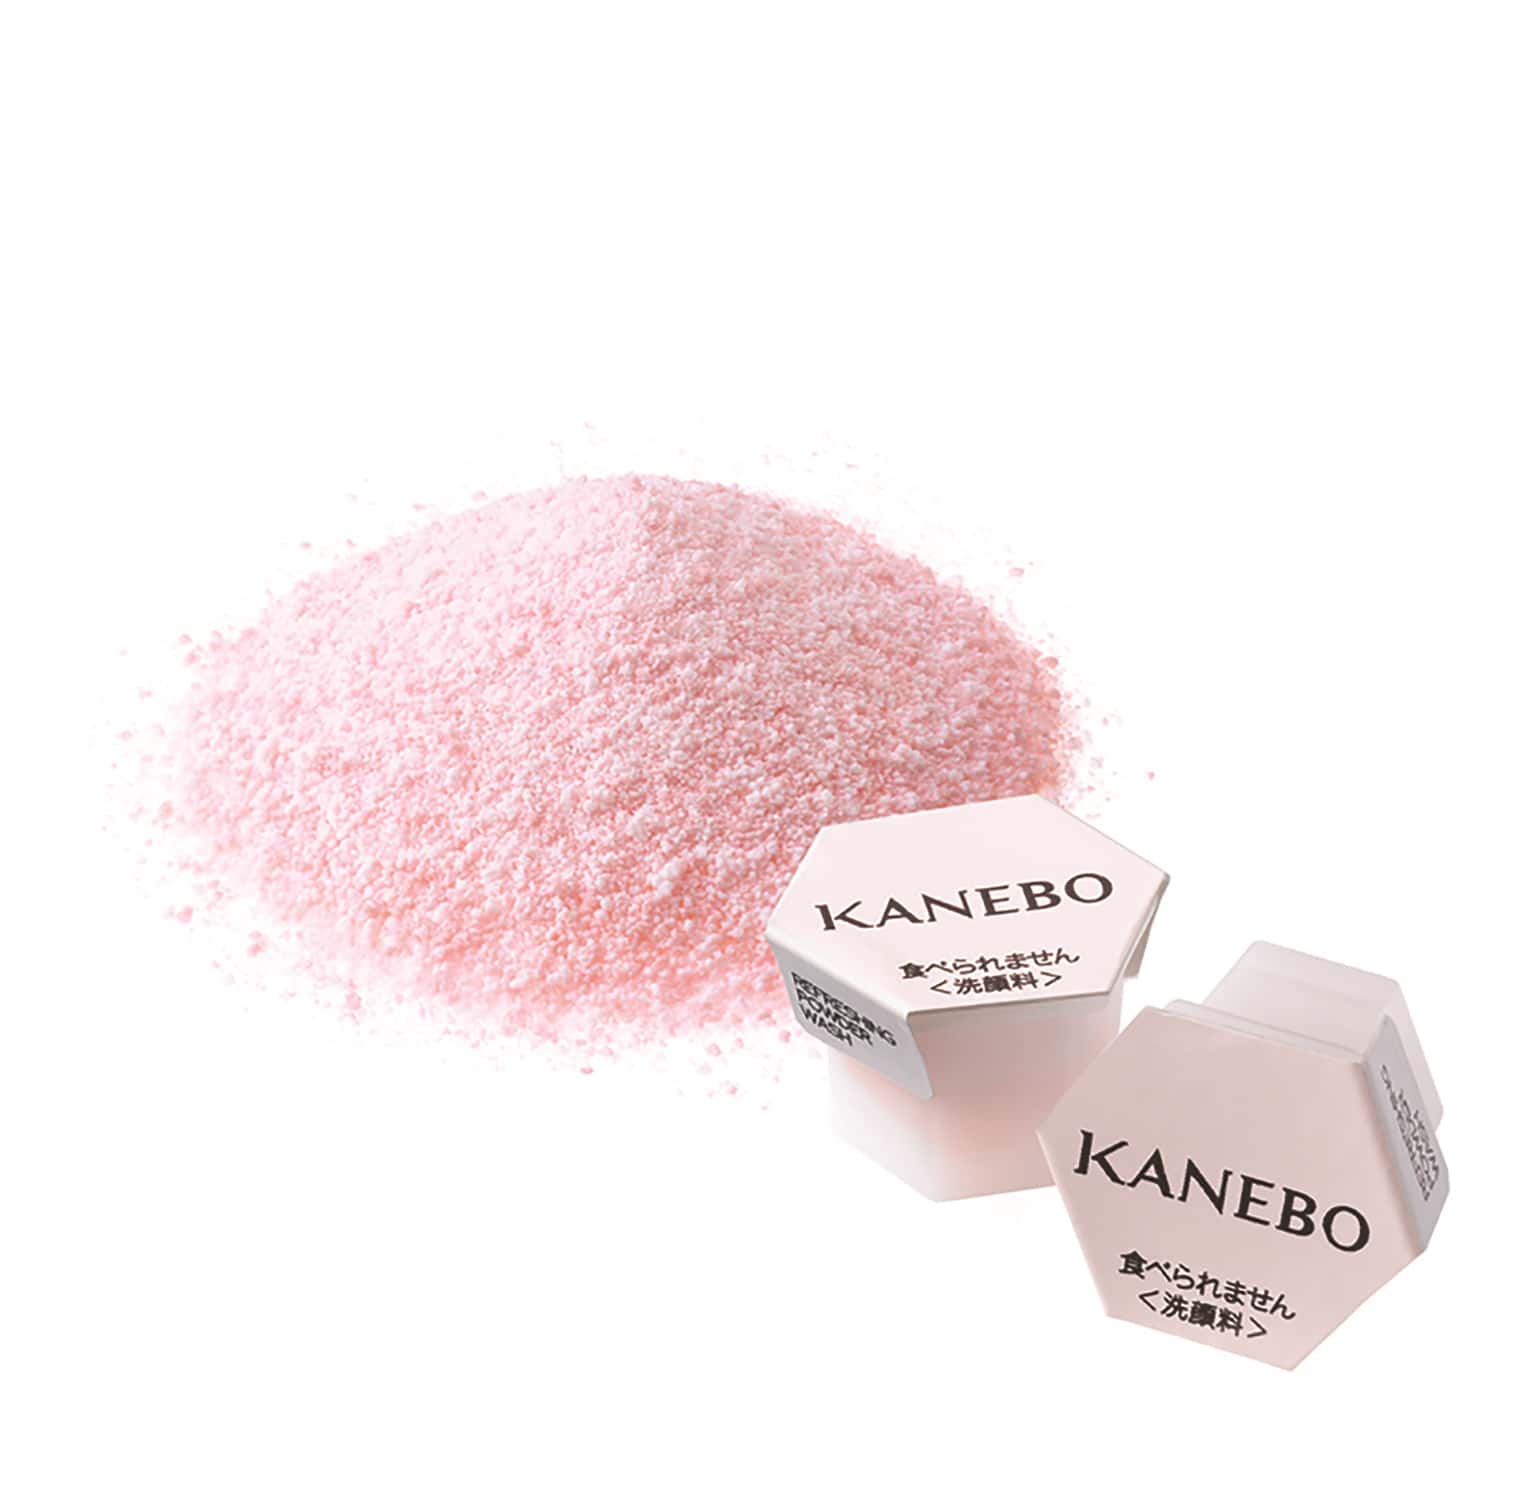 Kanebo Daily Rhythm Refreshing Powder Wash.jpg